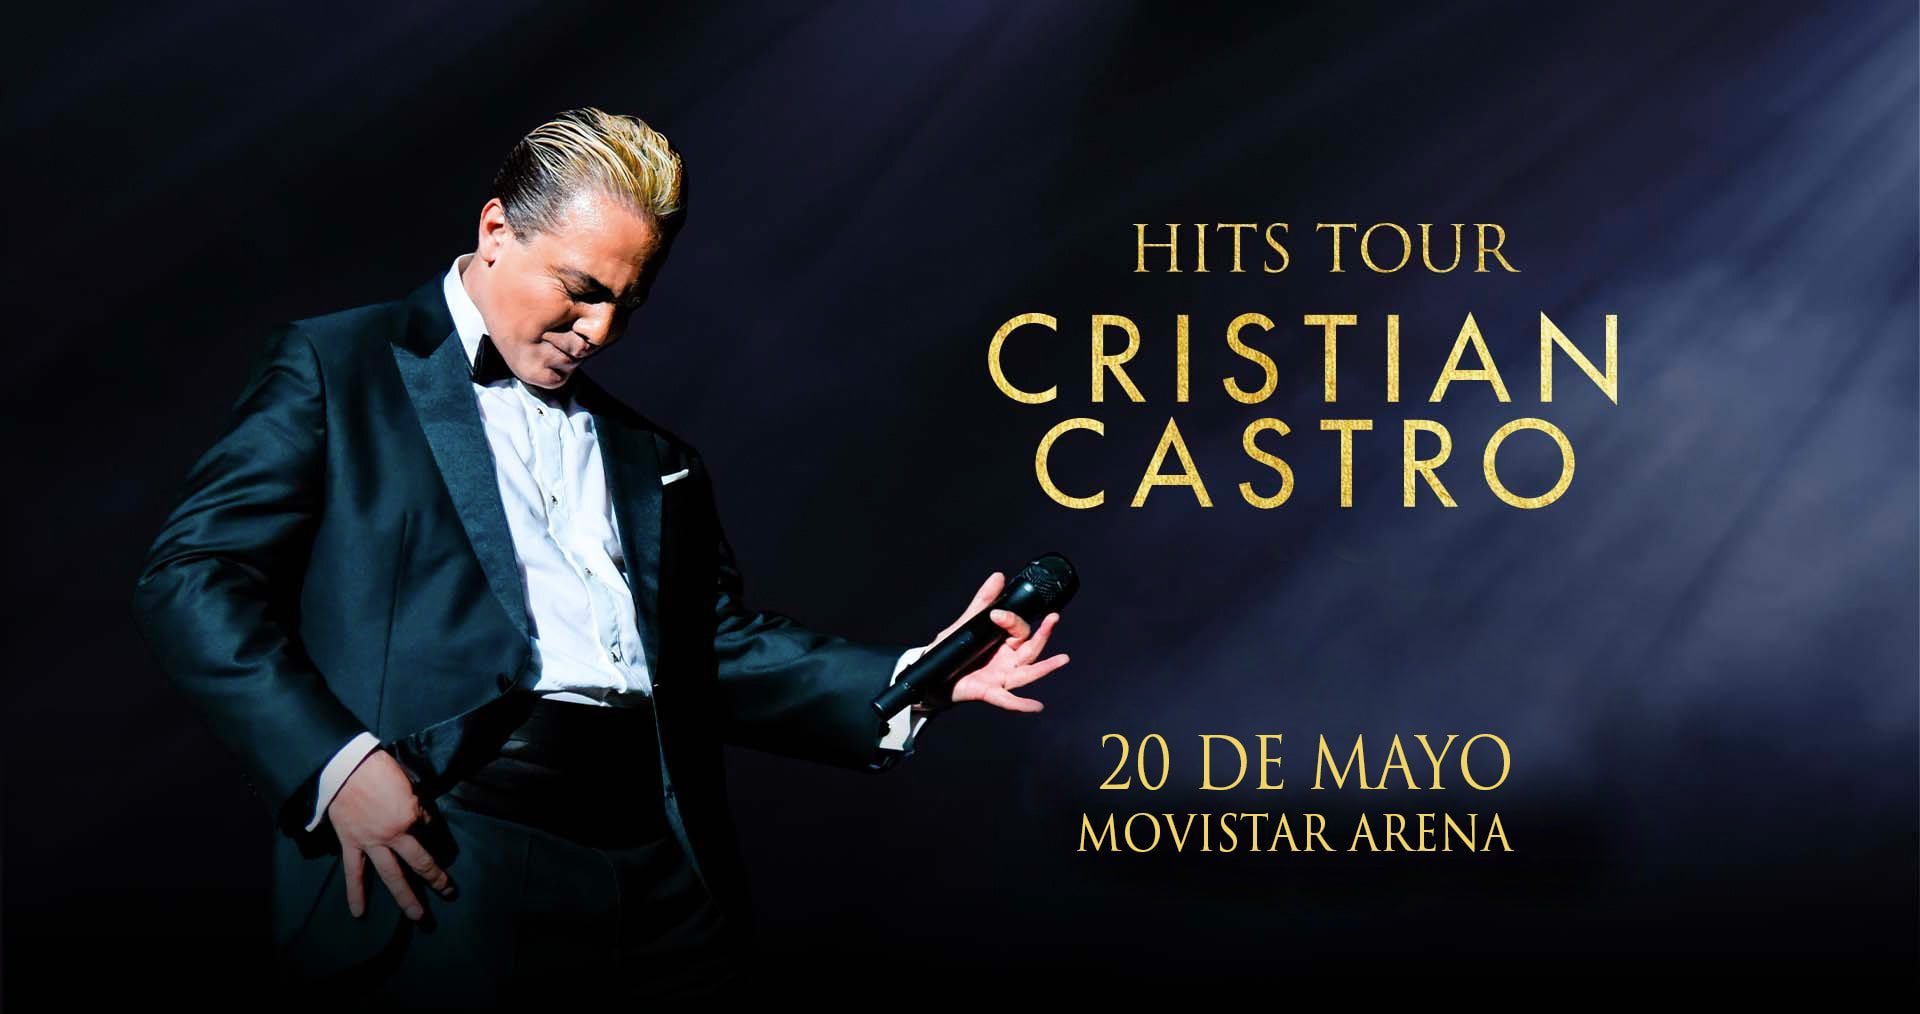 Cristian Castro en Chile el 20 de mayo.